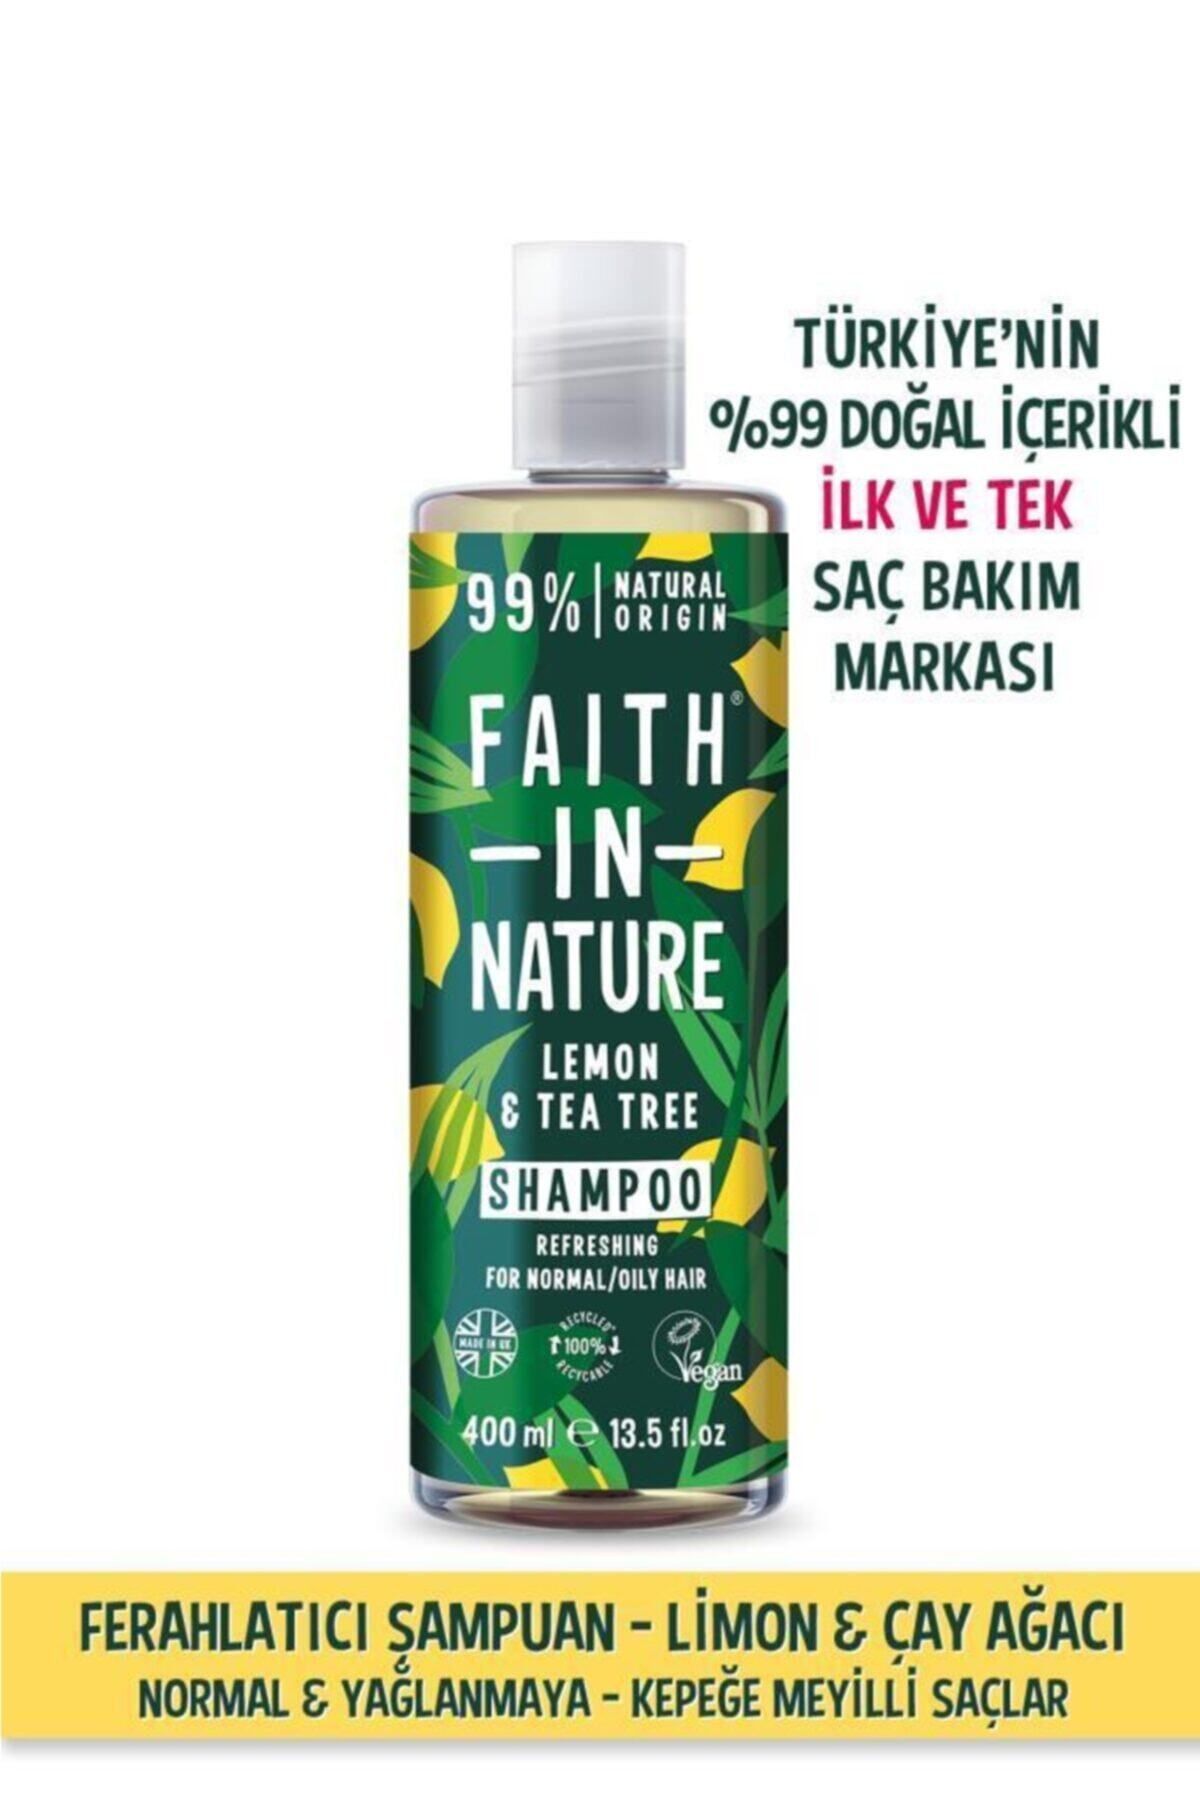 Faith In Nature %99 Doğal Ferahlatıcı Şampuan Limon&çay Ağacı Normal&yağlanmaya-kepeğe Meyilli Saçlar Için